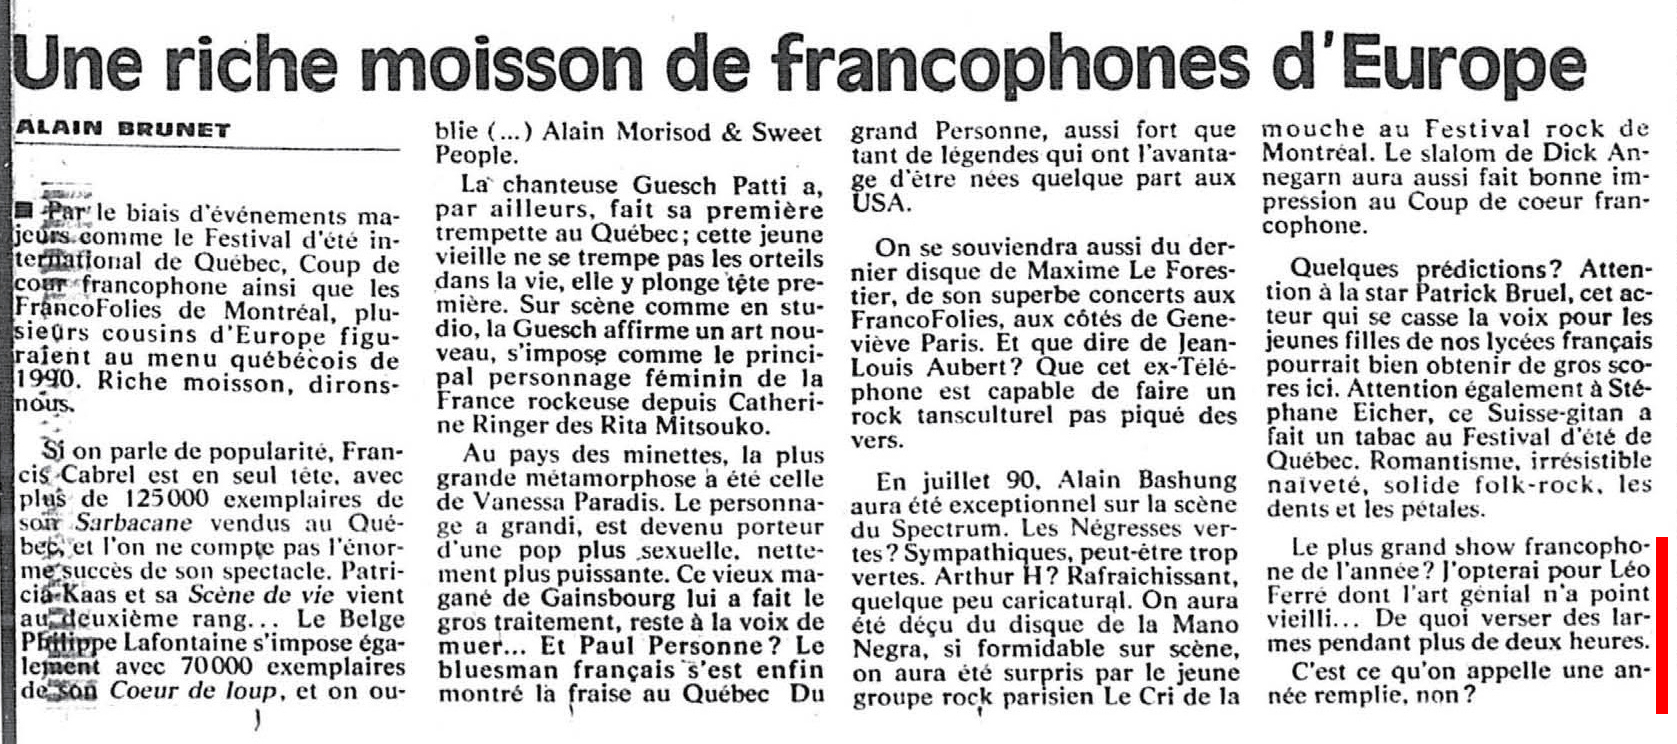 Léo Ferré - La Presse, 29 décembre 1990, D. Arts et spectacles